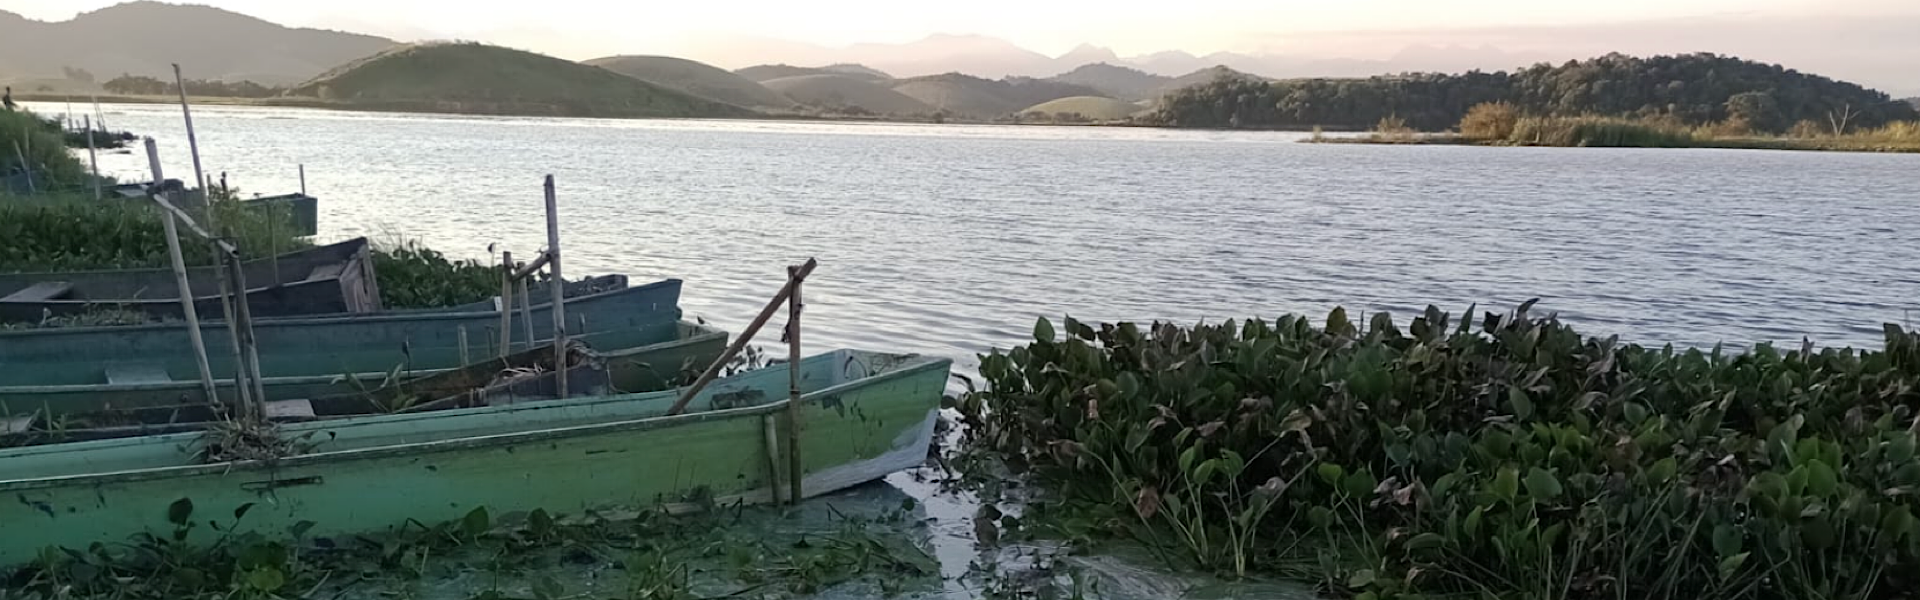 Mutirão de limpeza da Lagoa de Juturnaíba, no estado do Rio, acontece neste sábado